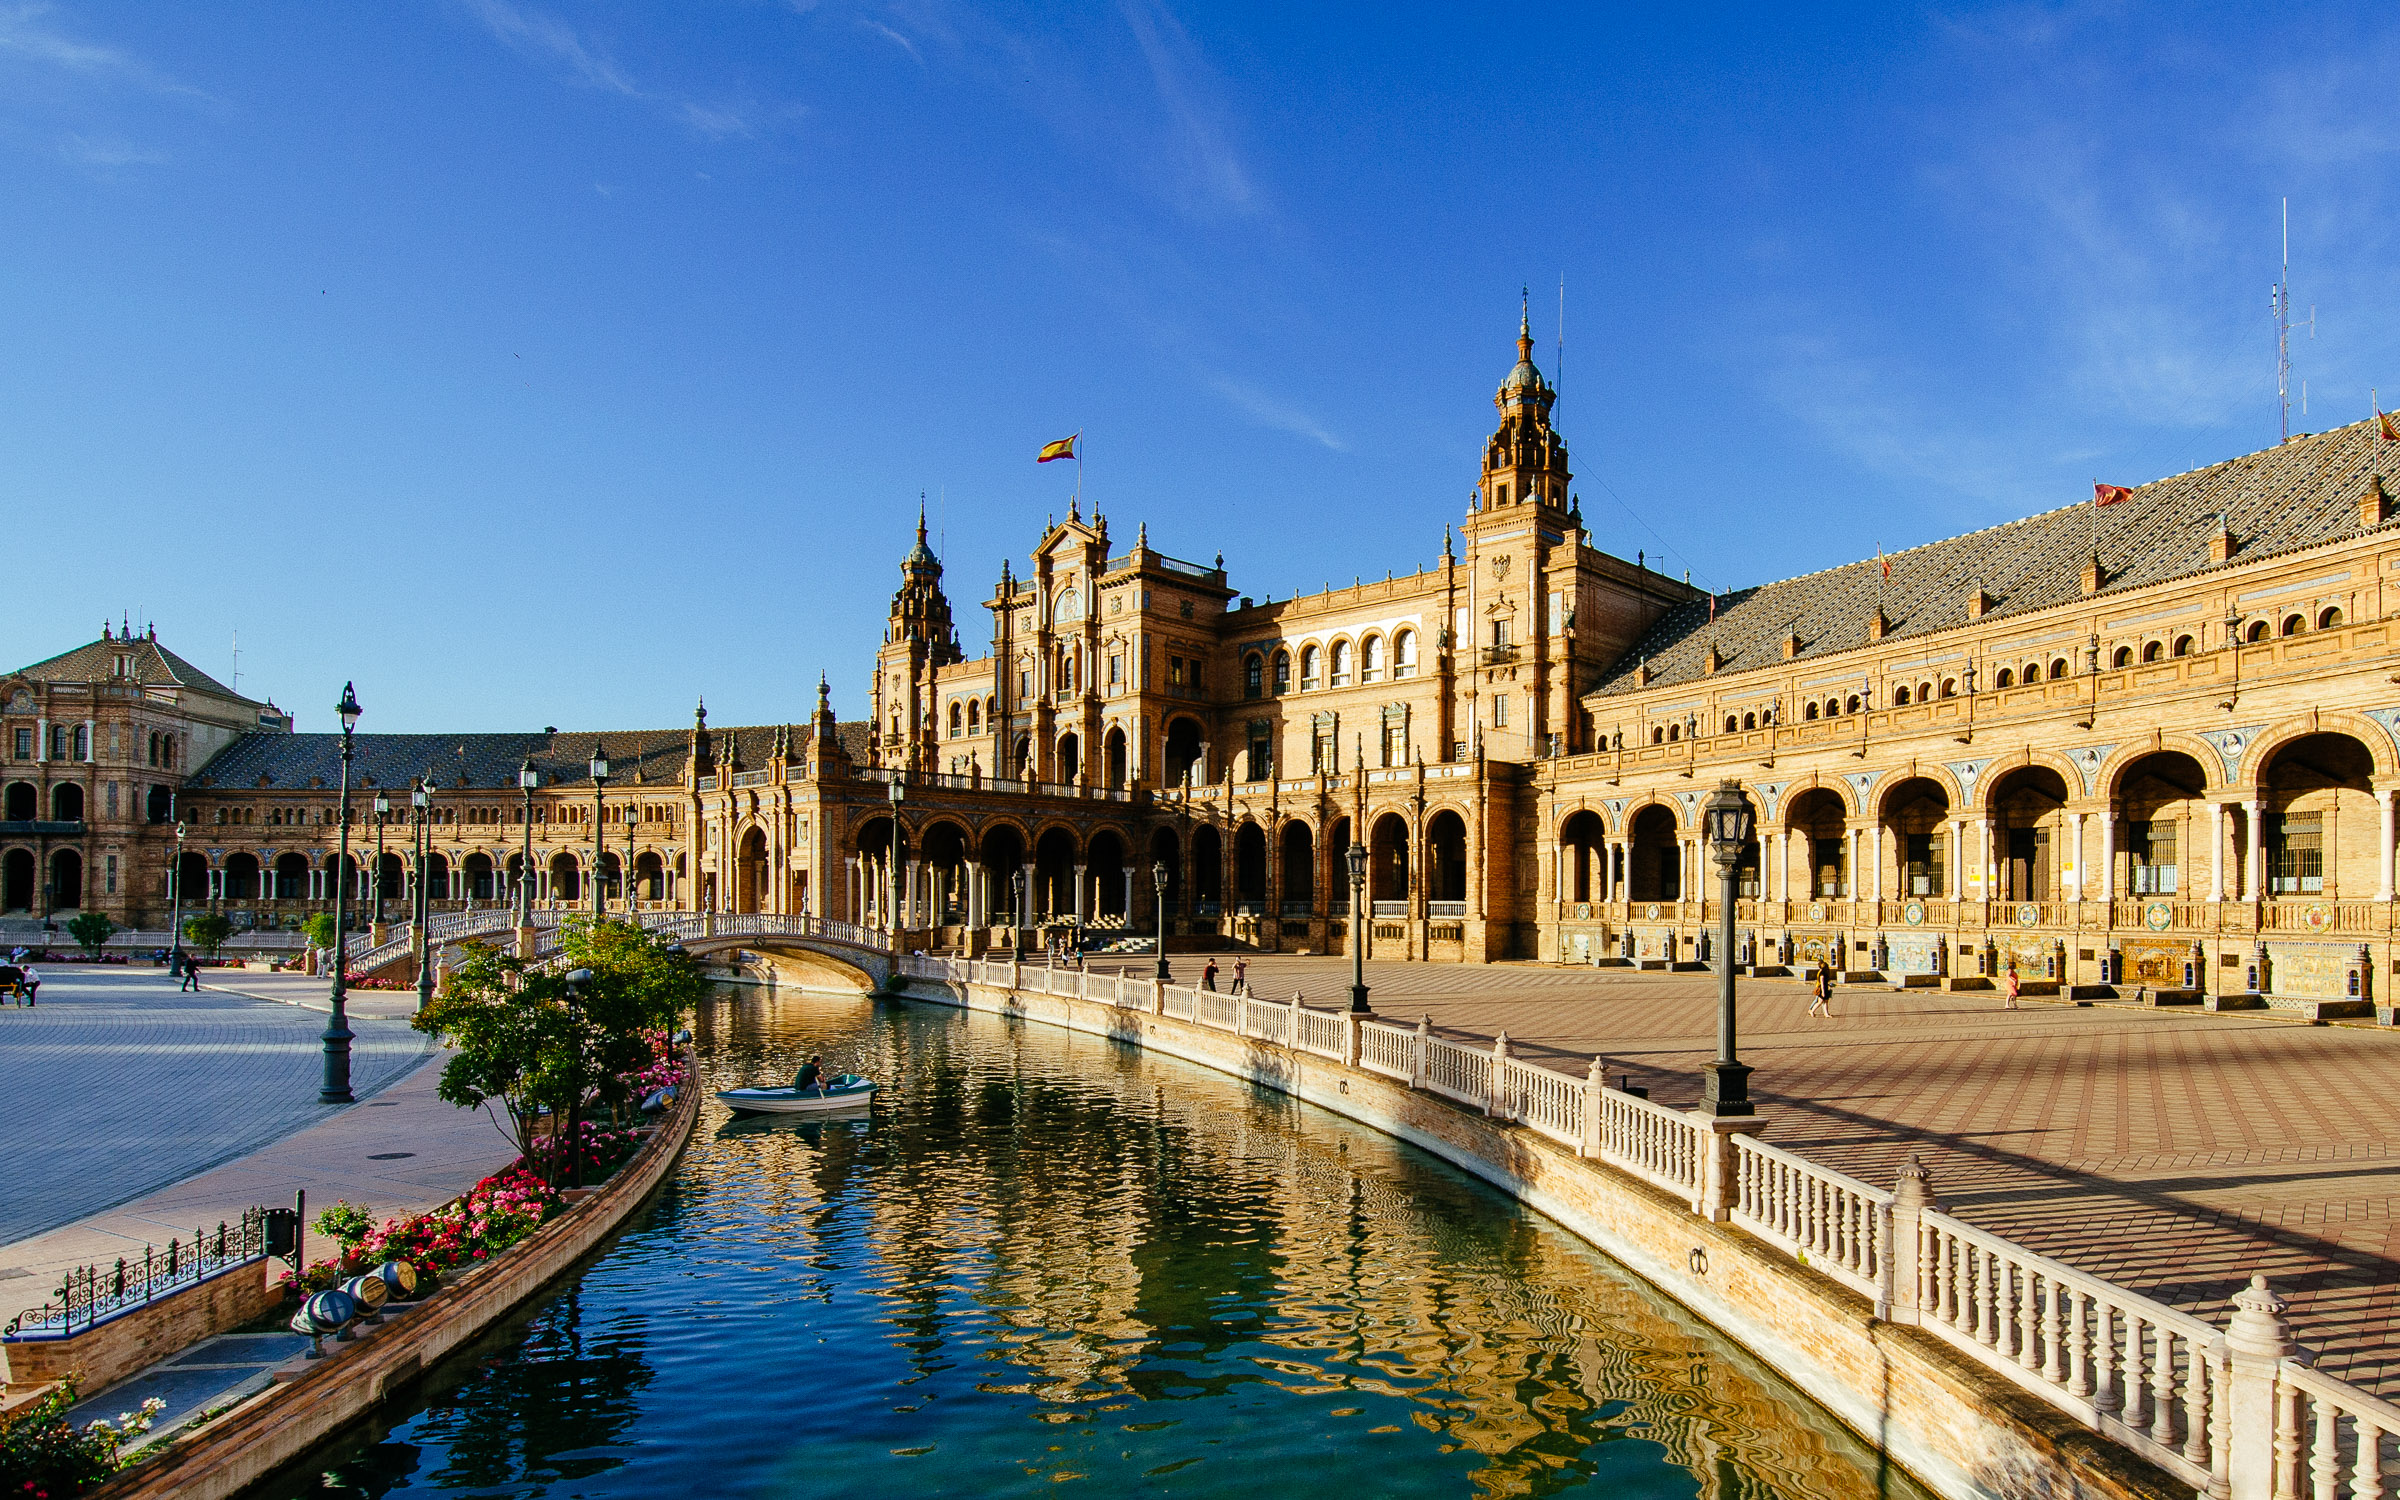 Plaza de España - Seville